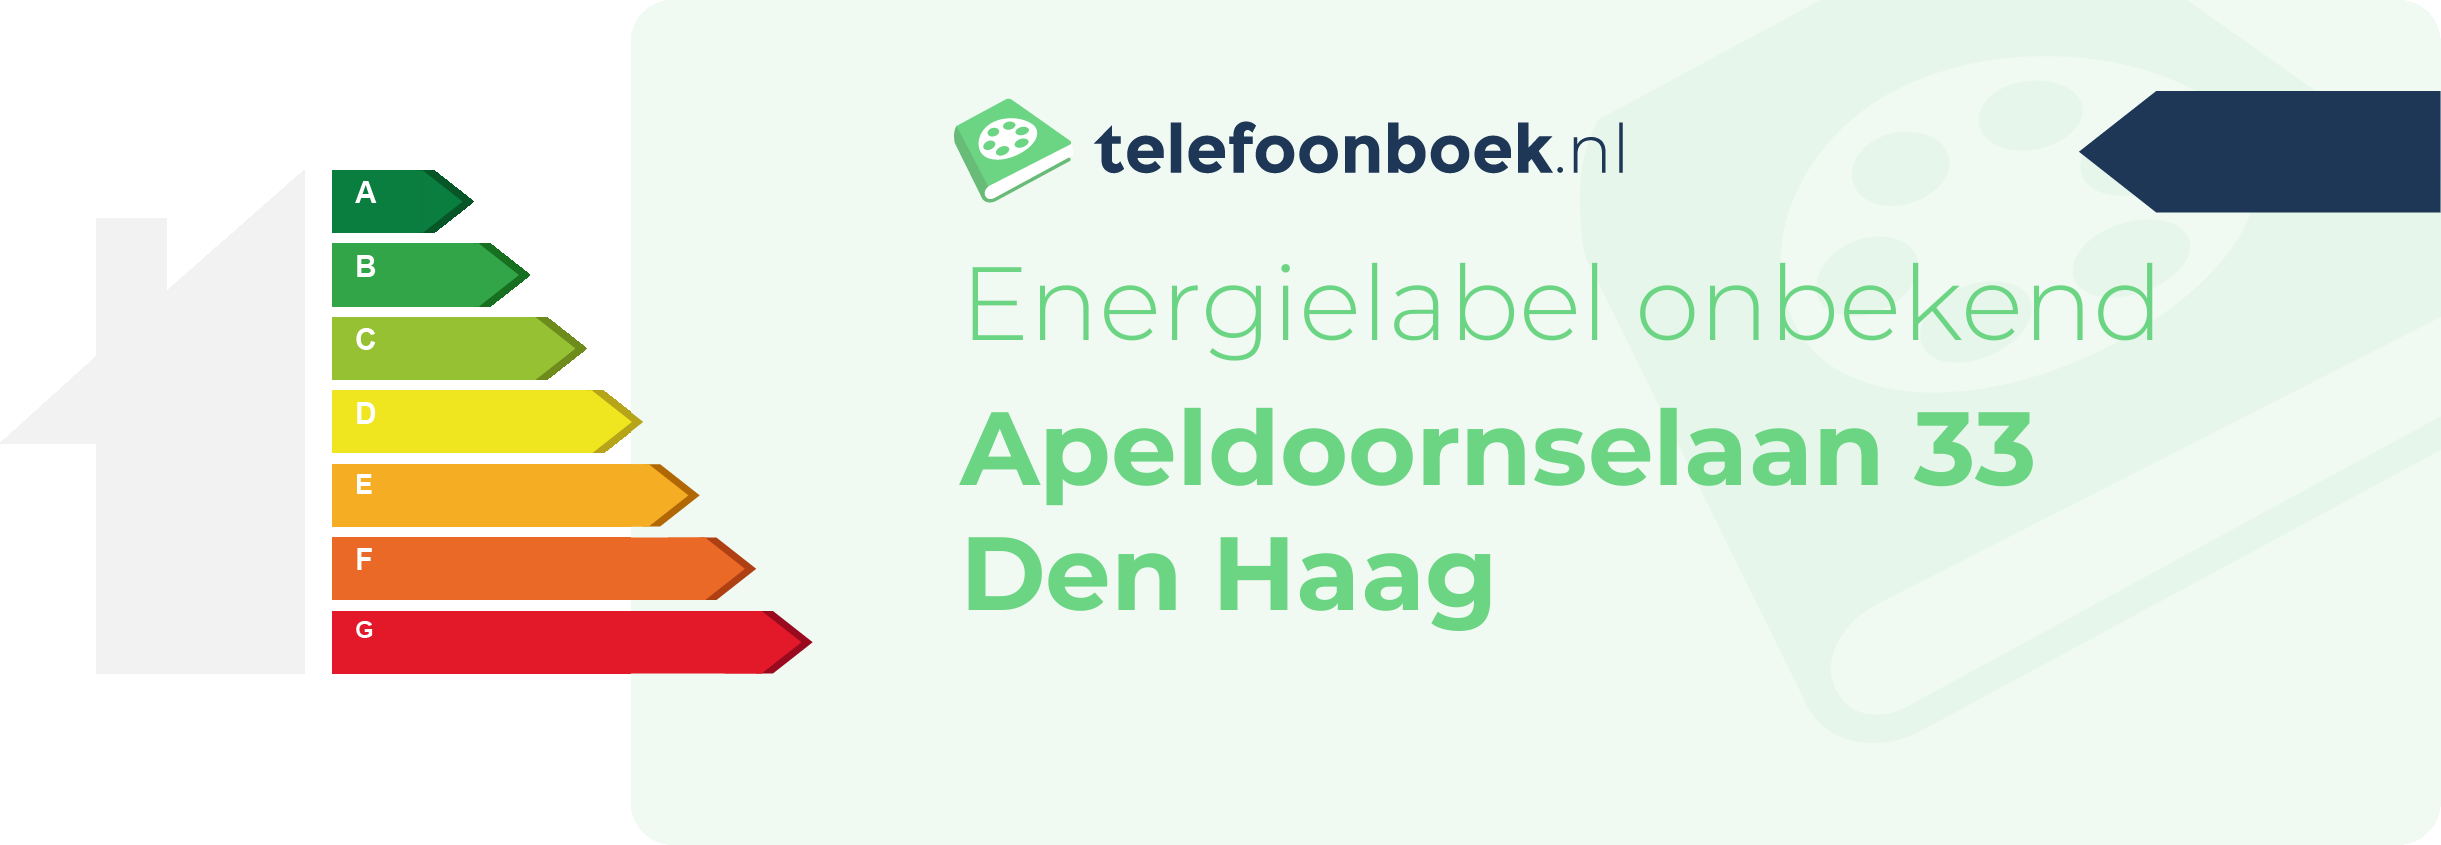 Energielabel Apeldoornselaan 33 Den Haag